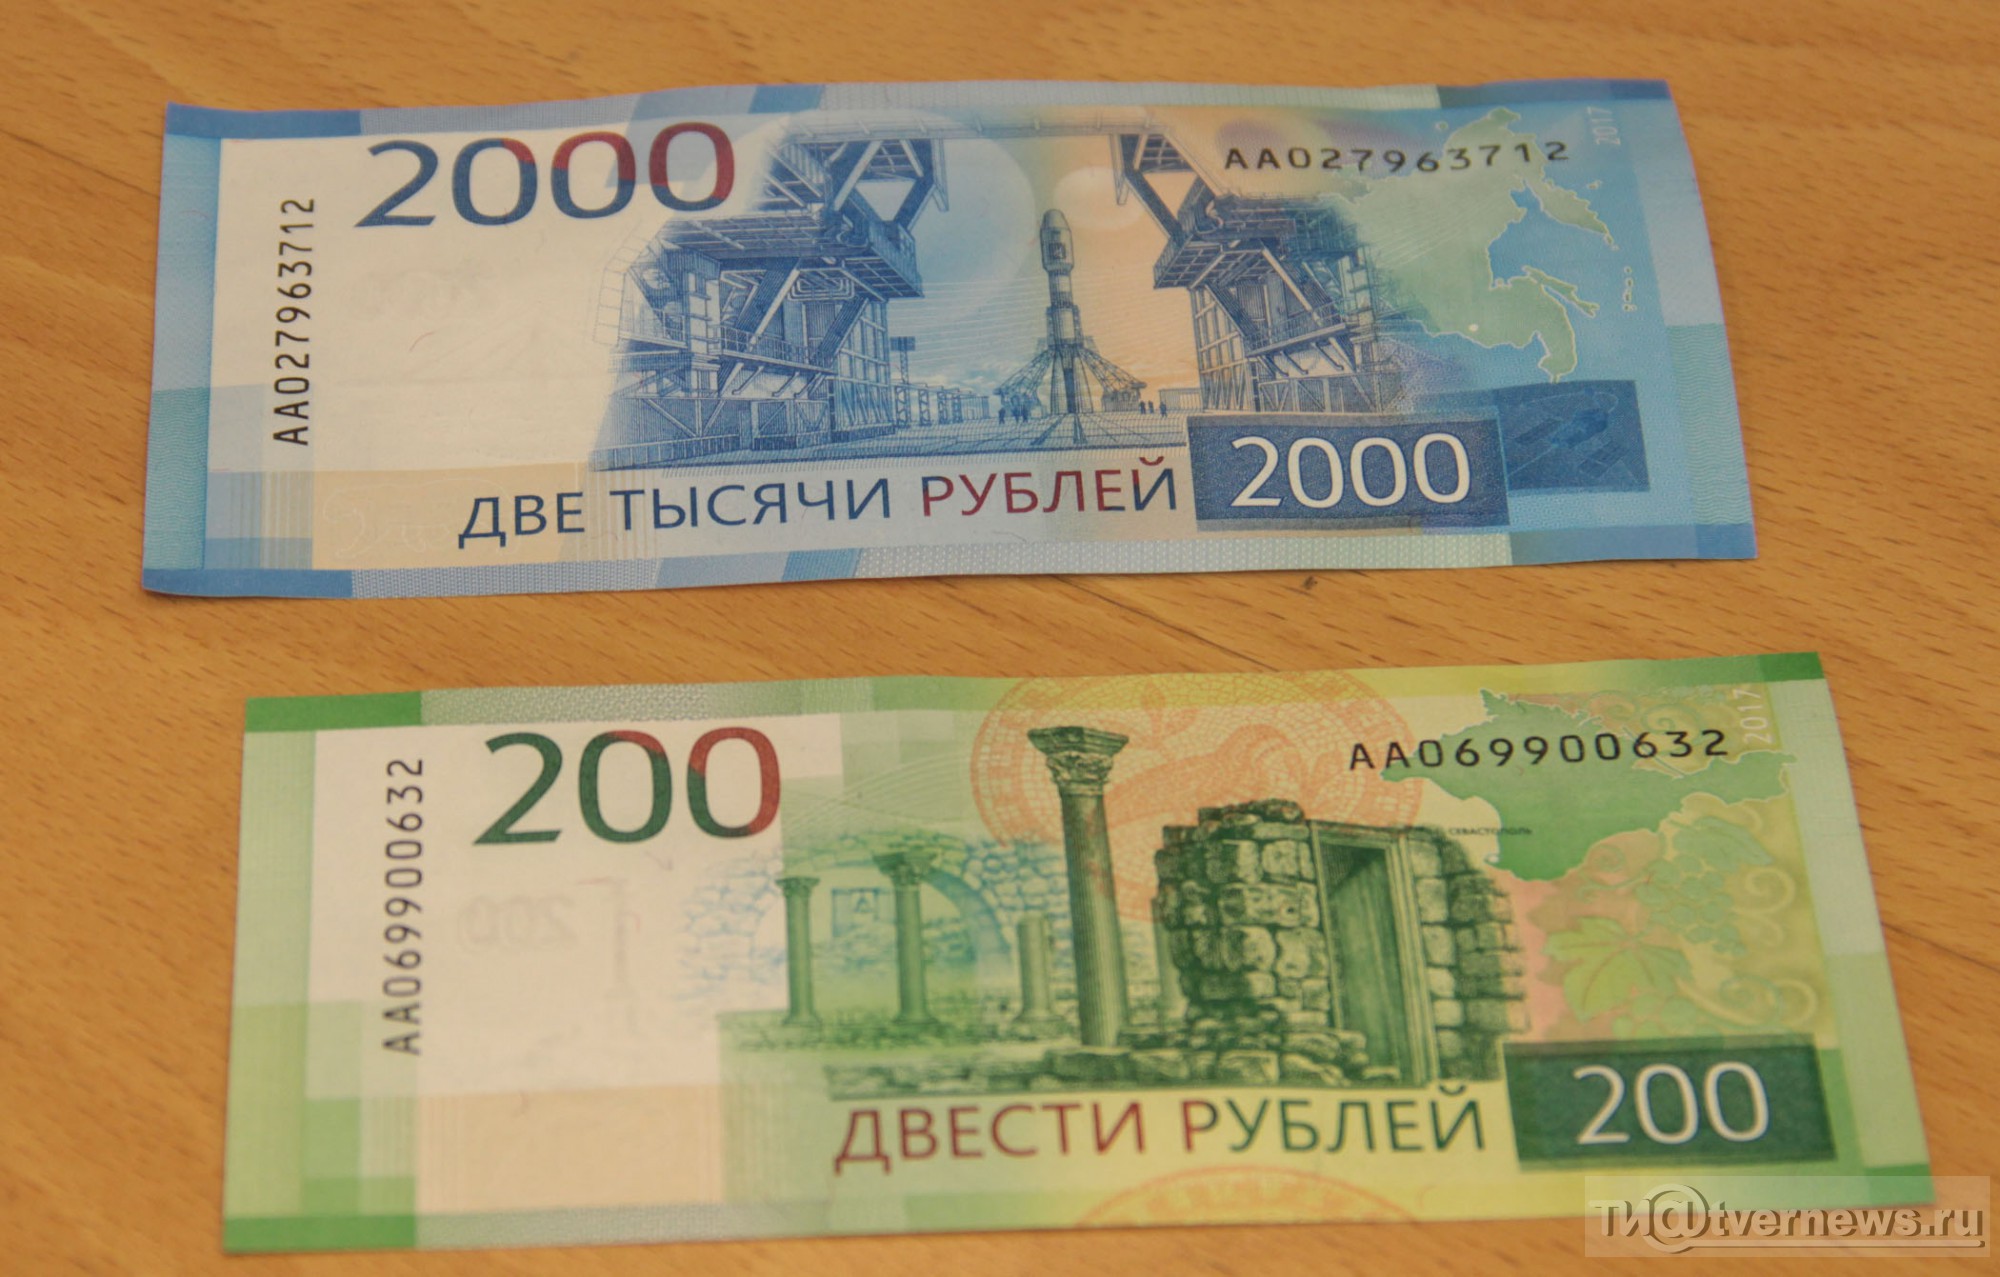 Образец новых купюр рубля. 200 И 2000 рублей. Купюры 200 и 2000 рублей. 200 Рублей банкнота. Две тысячи рублей.